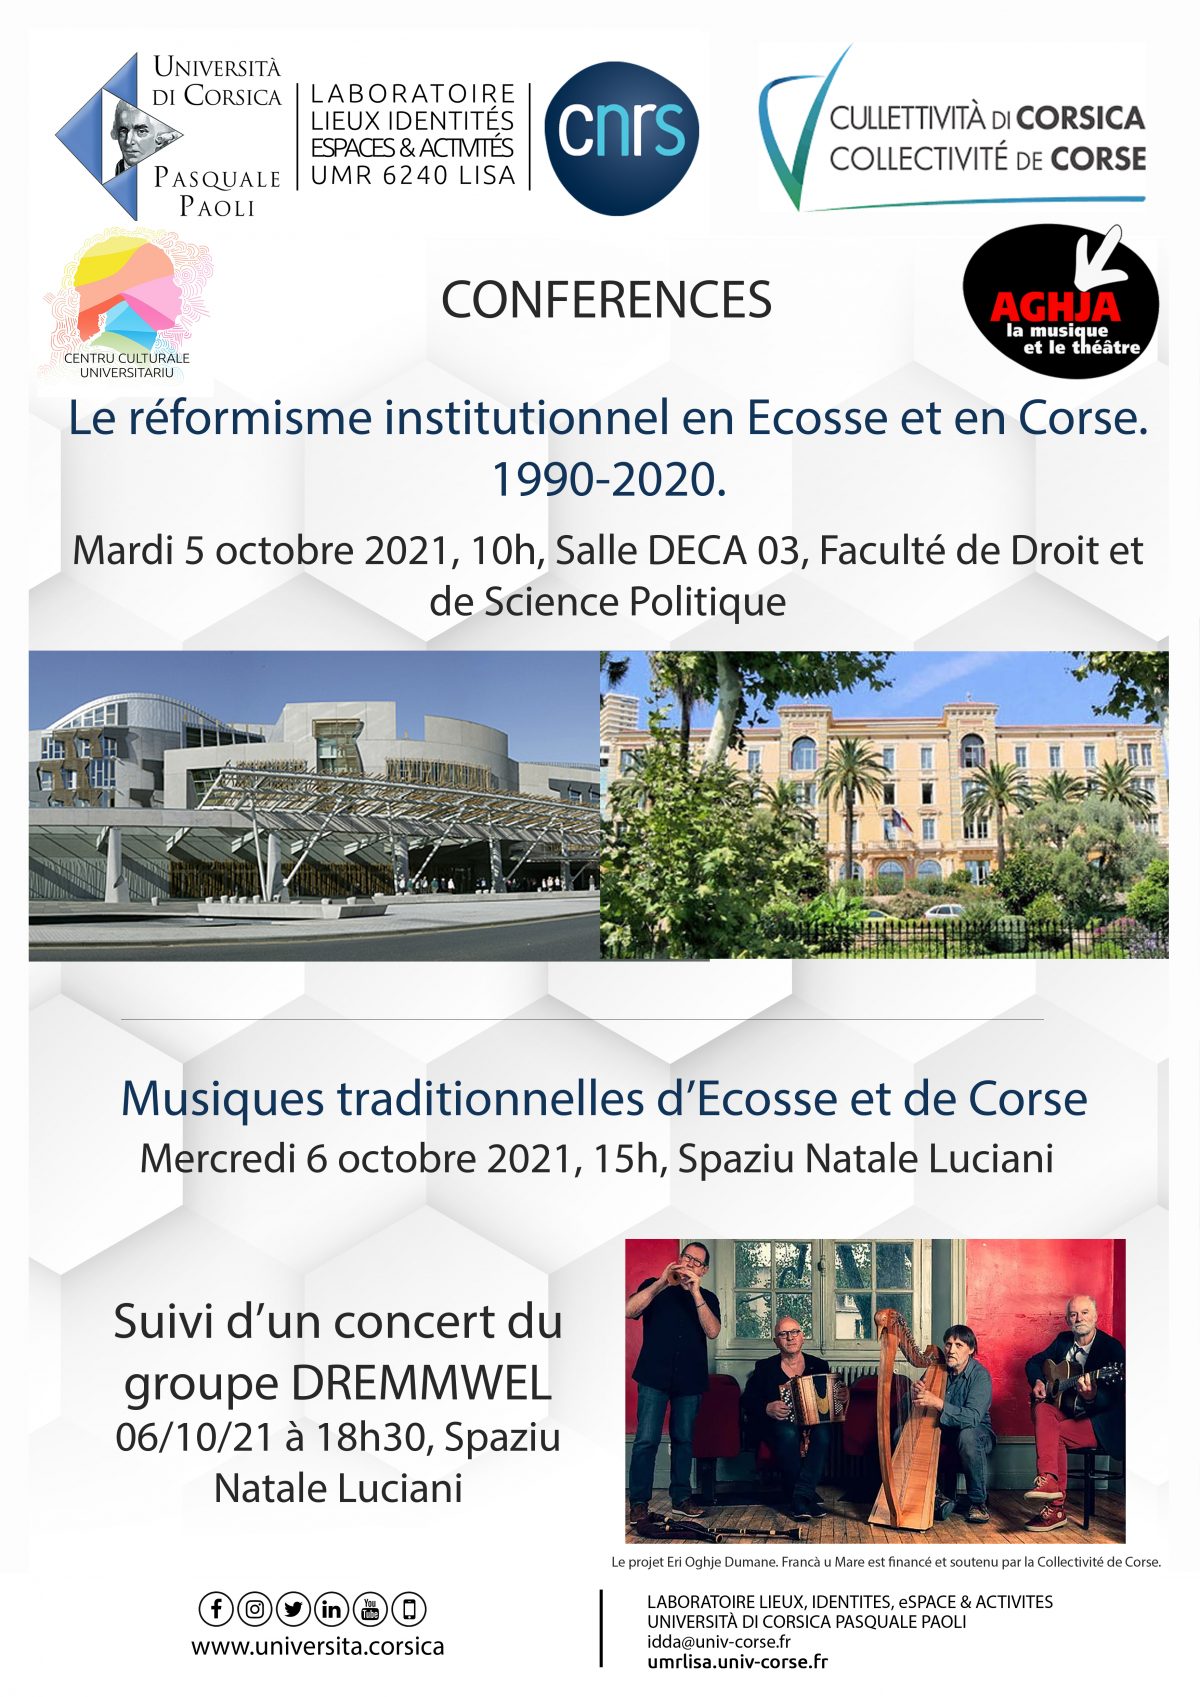 Conférences « Le réformisme institutionnel en Ecosse et en Corse 1990-2020 » — « Musiques traditionnelles de Corse et d’Écosse »